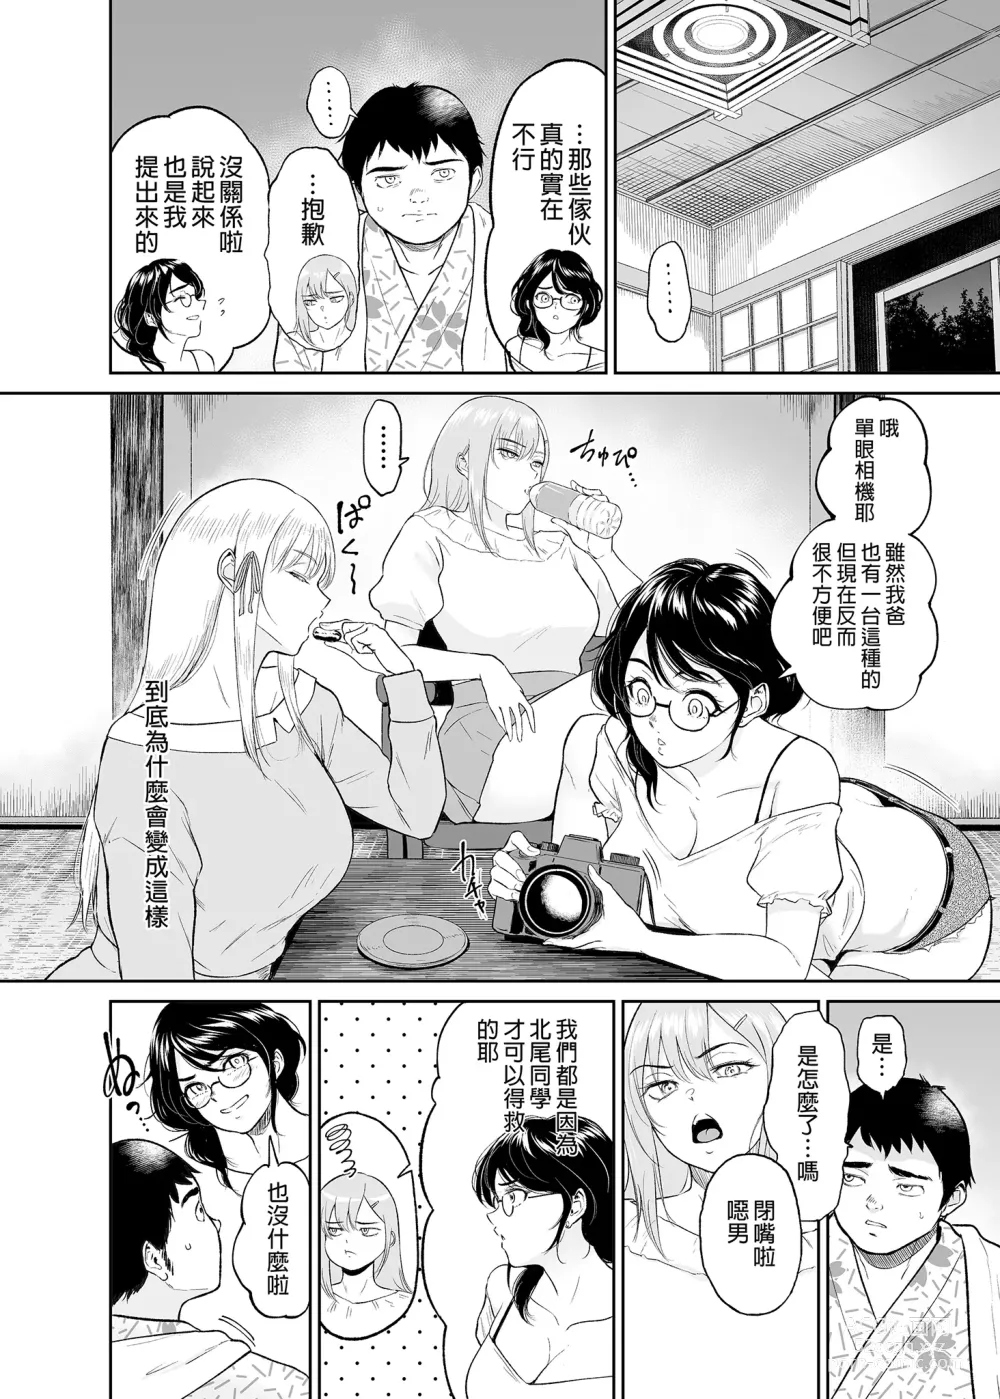 Page 8 of doujinshi 処女を散らす部屋ーキモオタの僕がクラスのギャルの処女喪失に付き合うことになった件